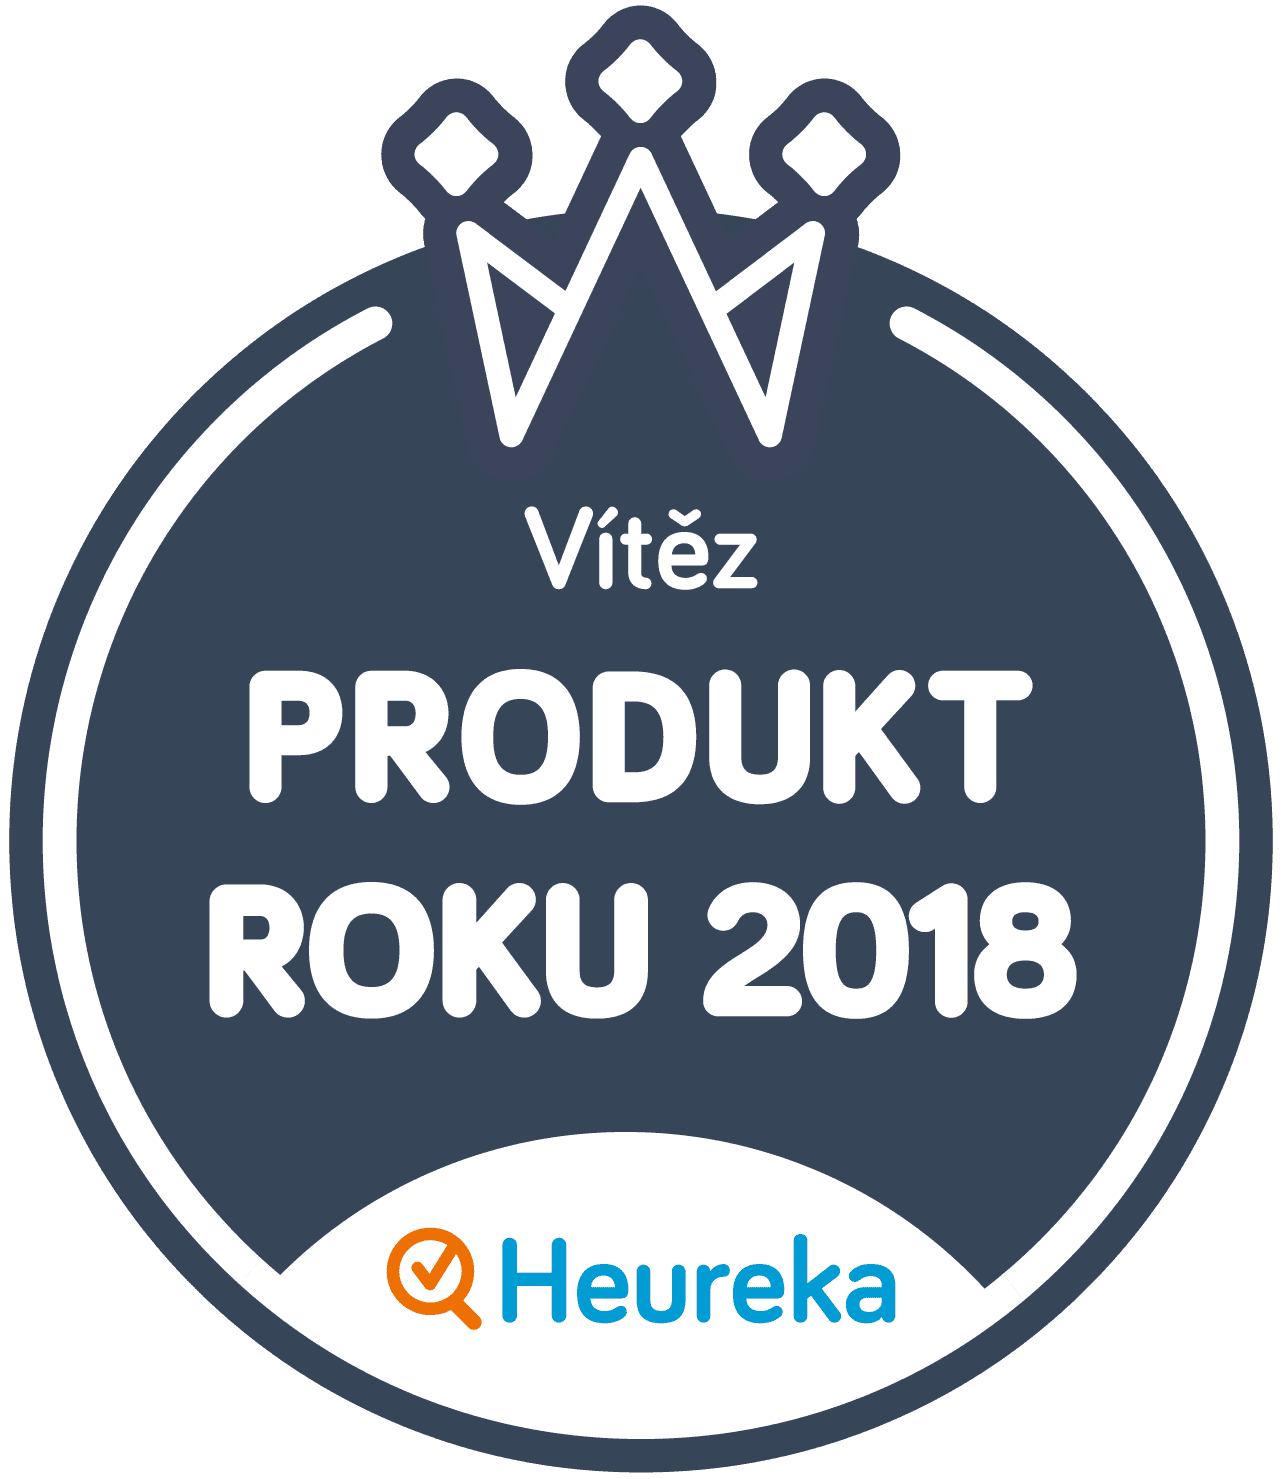 Vítěz soutěže Produkt roku 2018